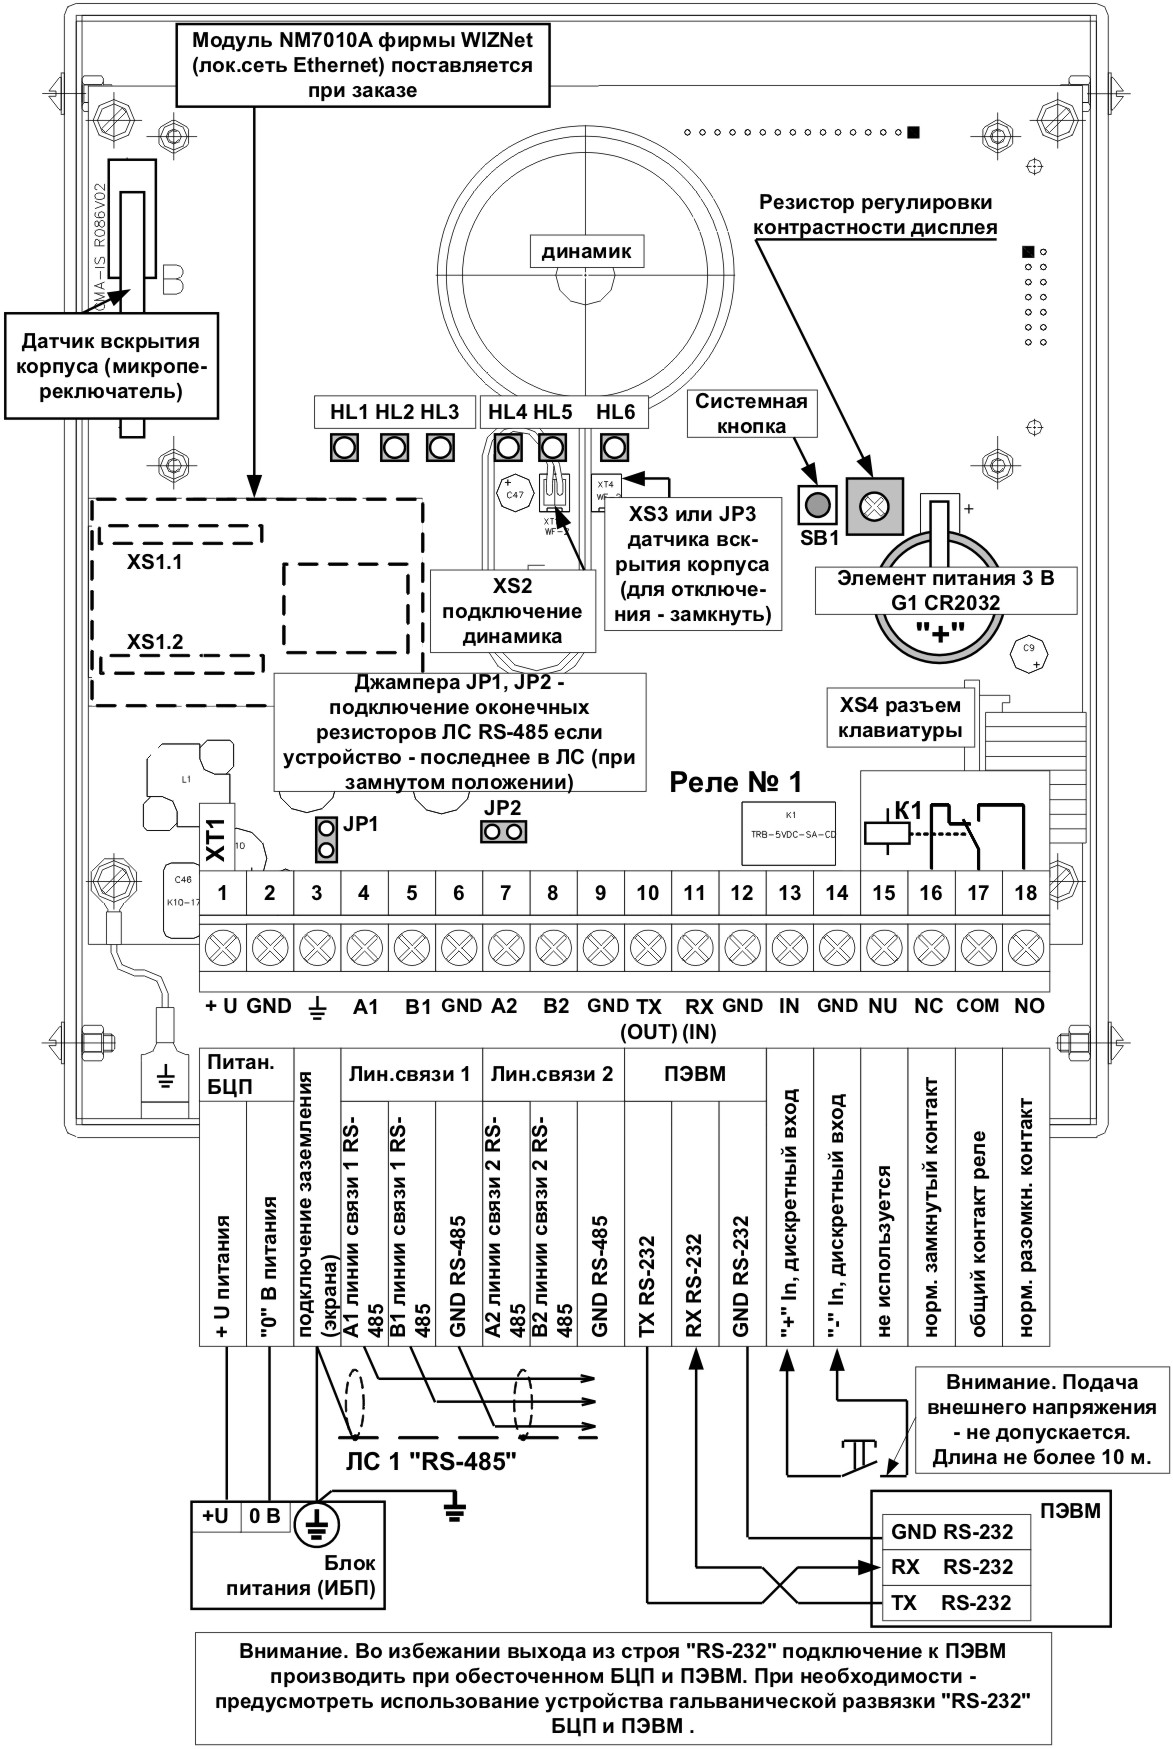 Схема подключения БЦП Р-08 исп.6В